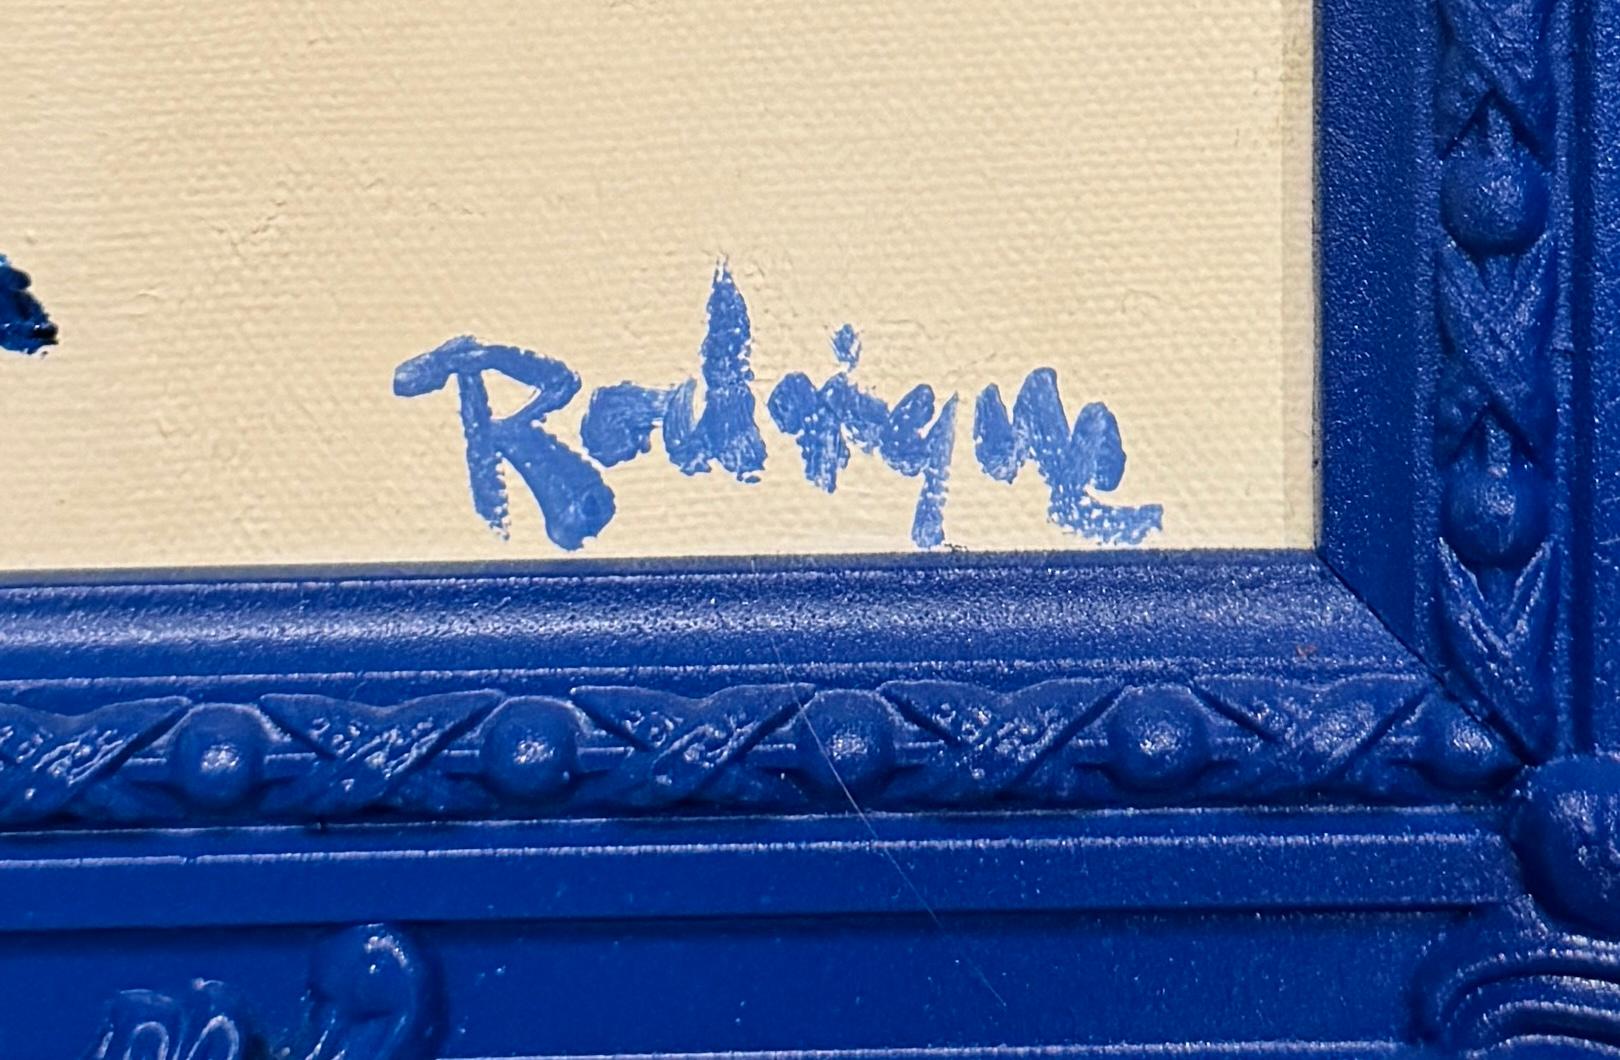 Blue Dog par George Rodrigues, 1995, huile ou acrylique sur toile, 14x11 non encadré, offert encadré. (#95101)

Un superbe chien bleu original dans un cadre en bois et gesso peint en bleu brillant et sculpté à la main par l'encadreur personnel de